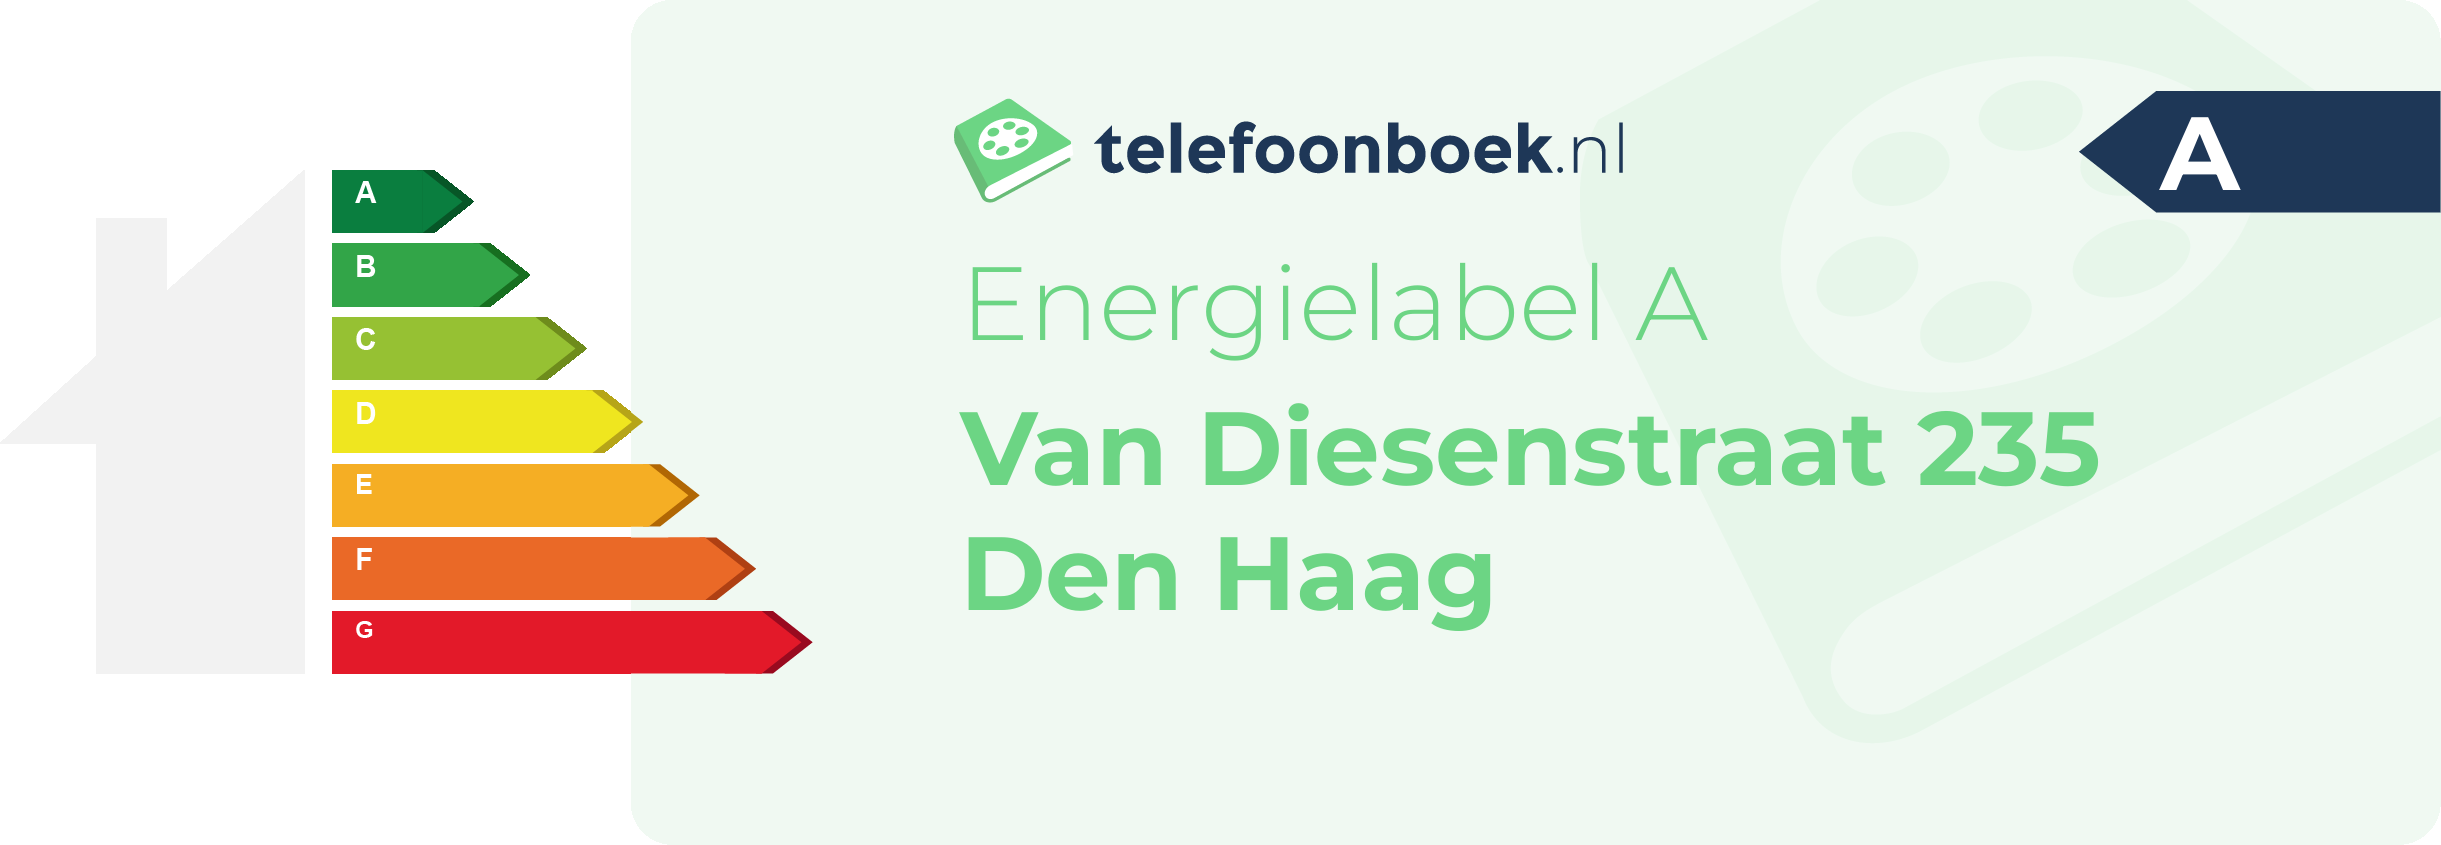 Energielabel Van Diesenstraat 235 Den Haag